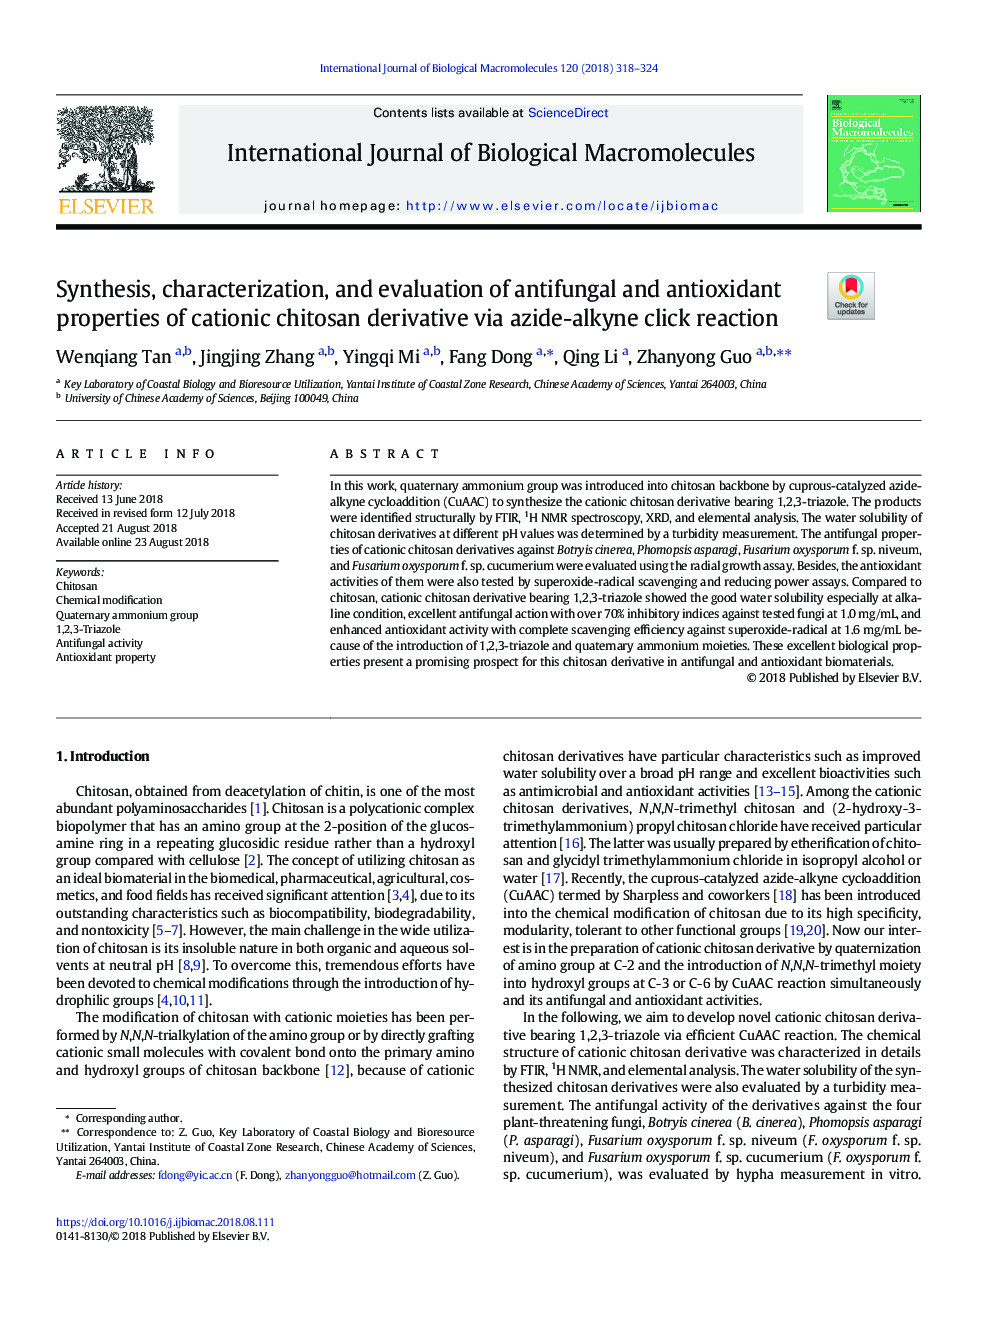 سنتز، خصوصیات و ارزیابی خواص ضد قارچی و آنتی اکسیدانی مشتق شده از کیتیون کیتوزان با استفاده از واکنش کلیک روی آیزید آلکین